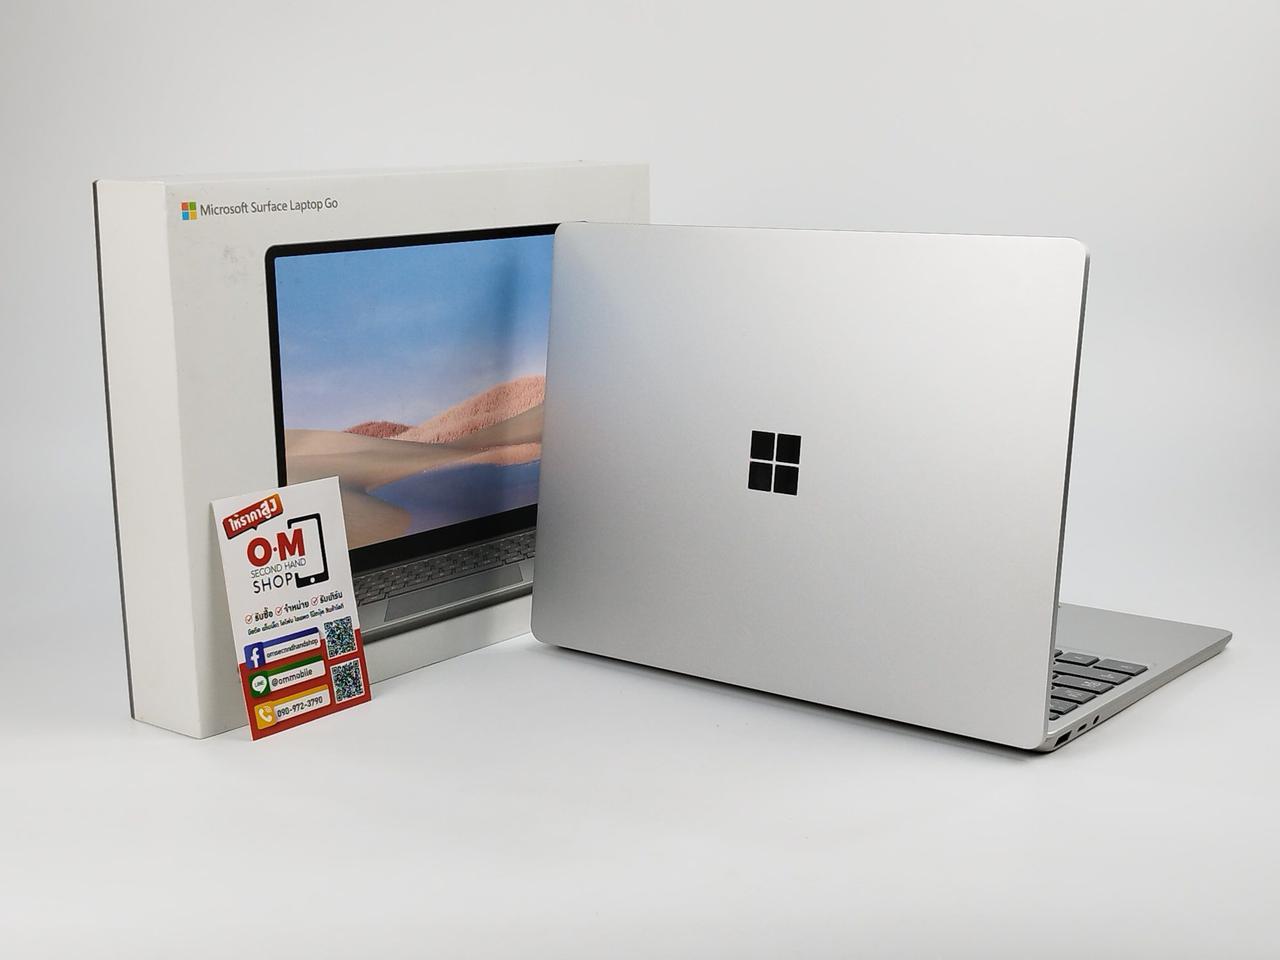 ขาย/แลก Microsoft Surface Laptop Go i5-1035G1 4/64 จอ Touchscreen ศูนย์ไทย สวยมาก ครบกล่อง เพียง 12,900 บาท  รูปเล็กที่ 1